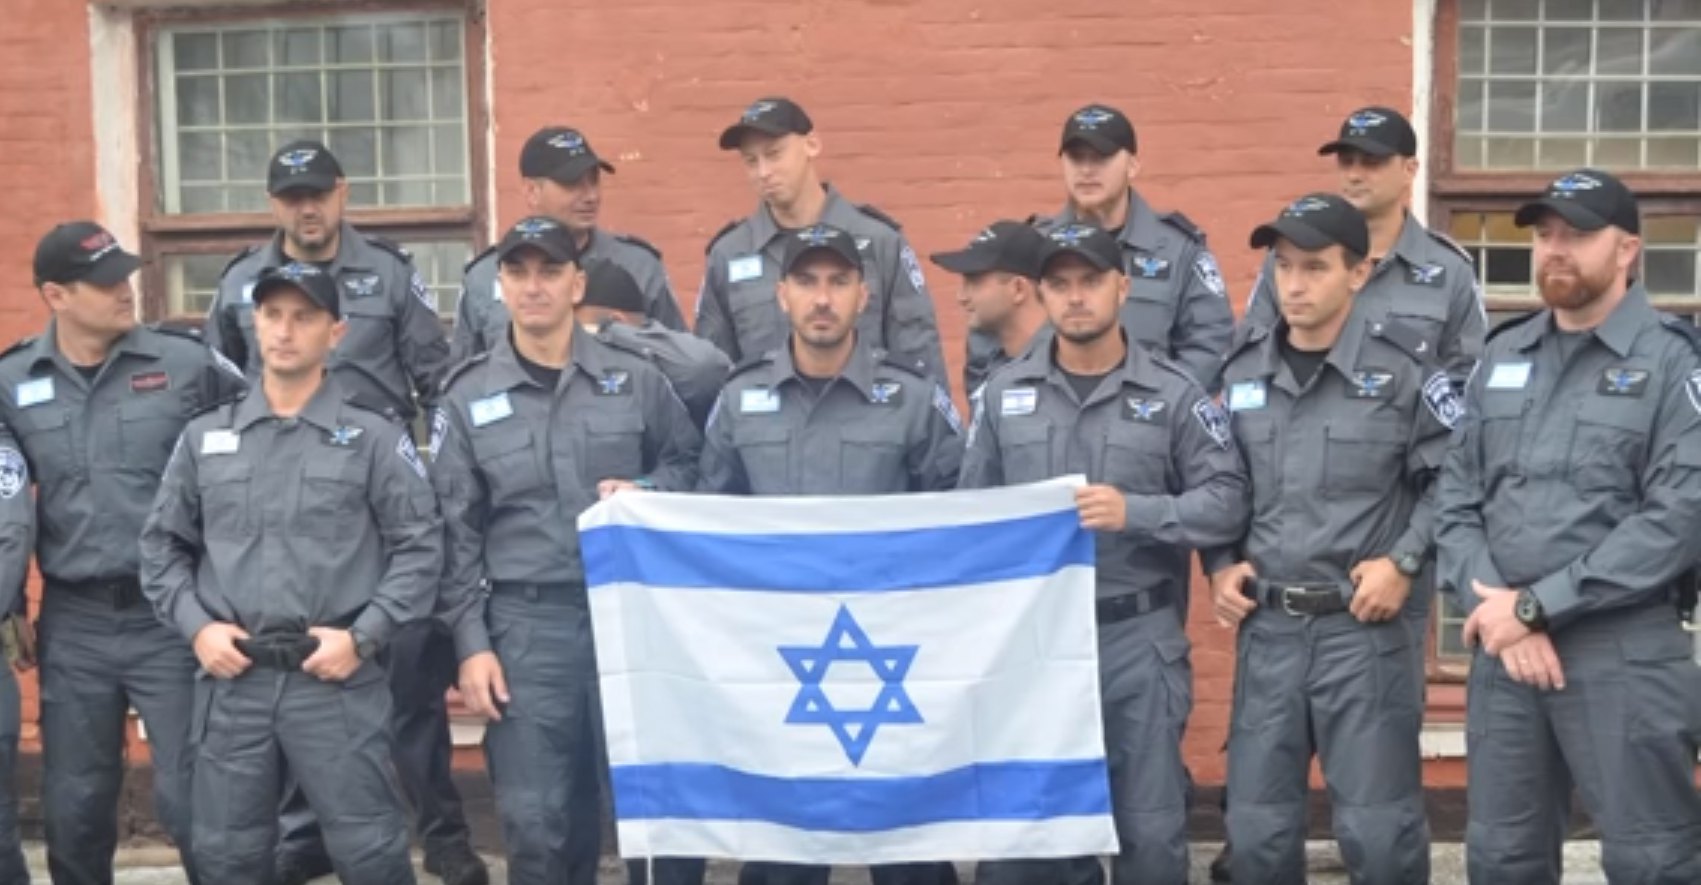 Израильские полицейские, которые прибыли в Умань